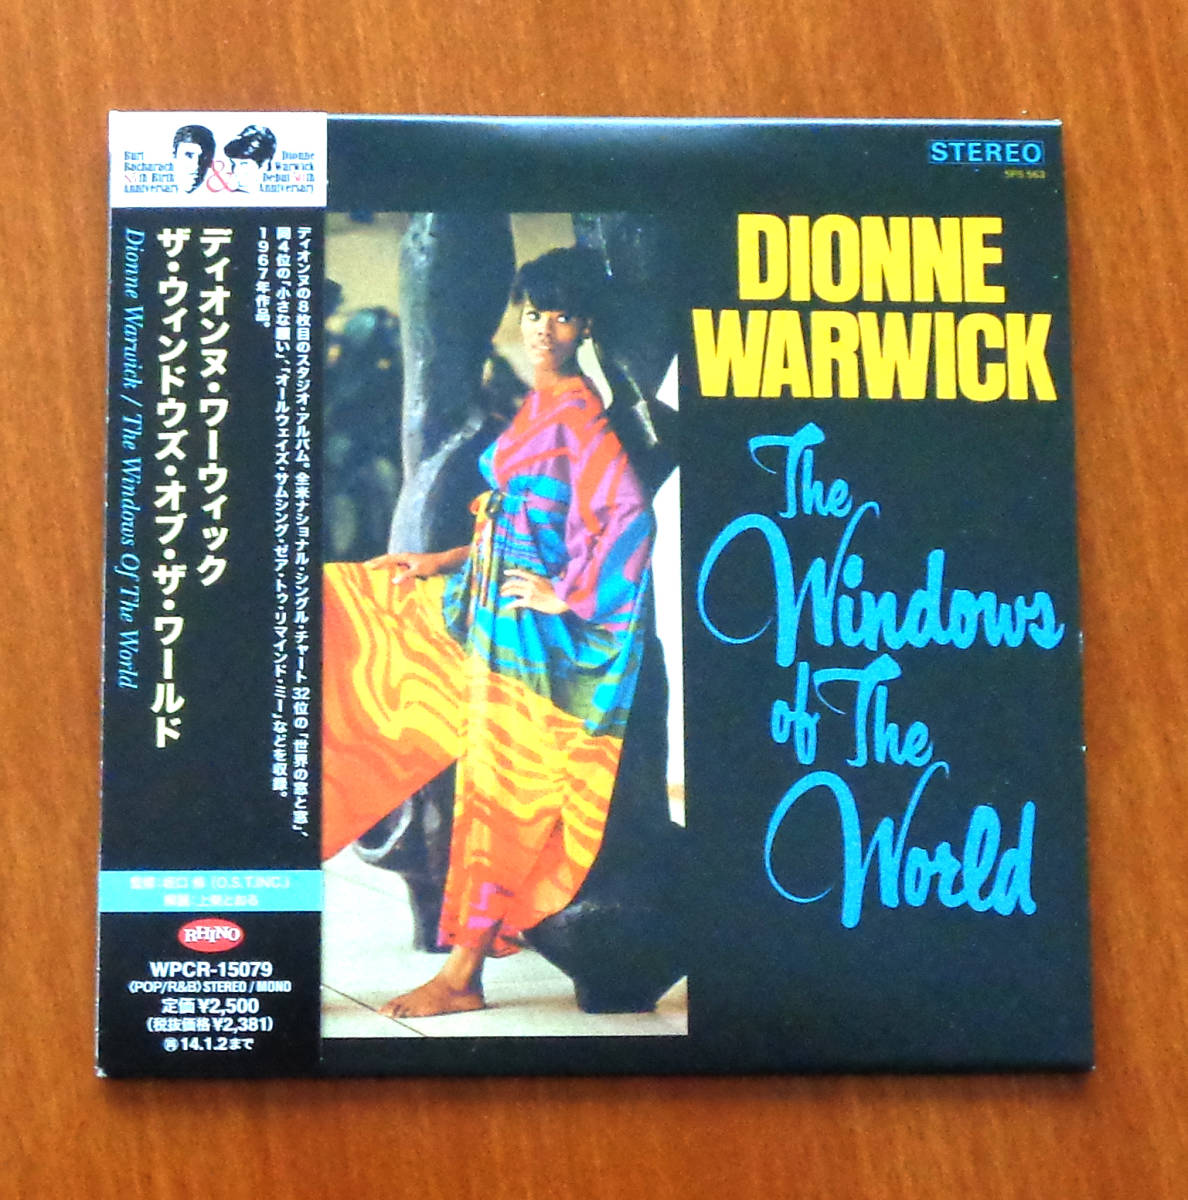 * бумага jacket CD[ The * окно z*ob* The * world ] Dion n* Warwick * как новый * первый раз производство ограничение 